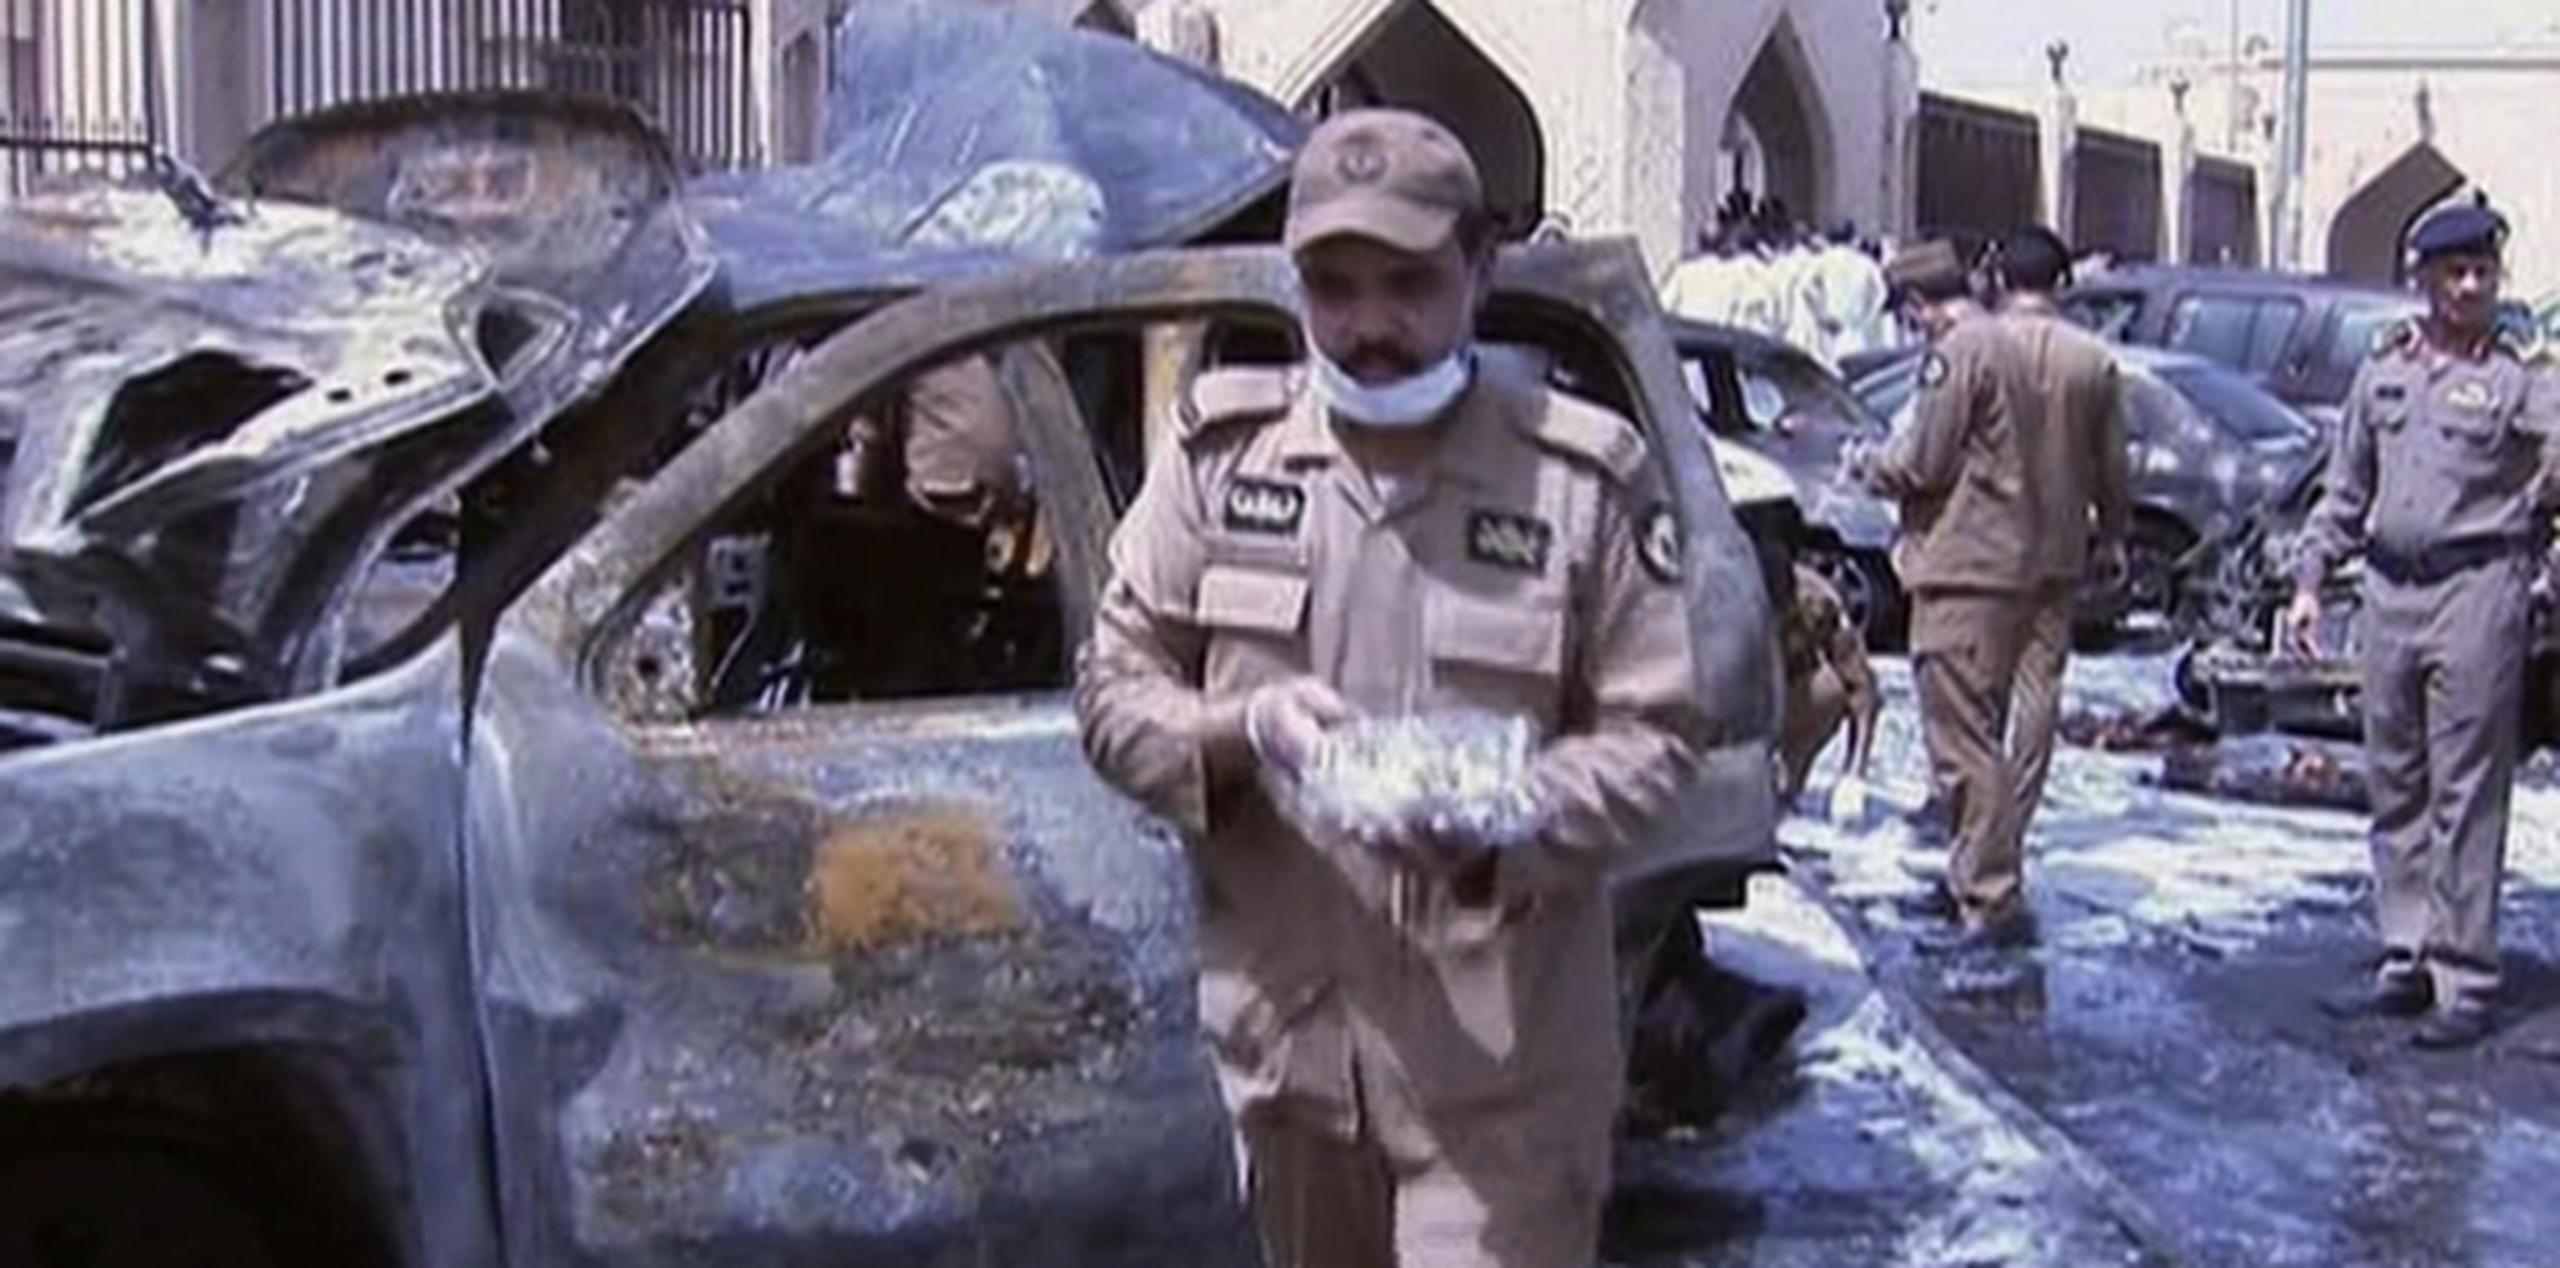 El más reciente  bombazo atribuído al EI ocurrió en Arabia Saudita. (AP)